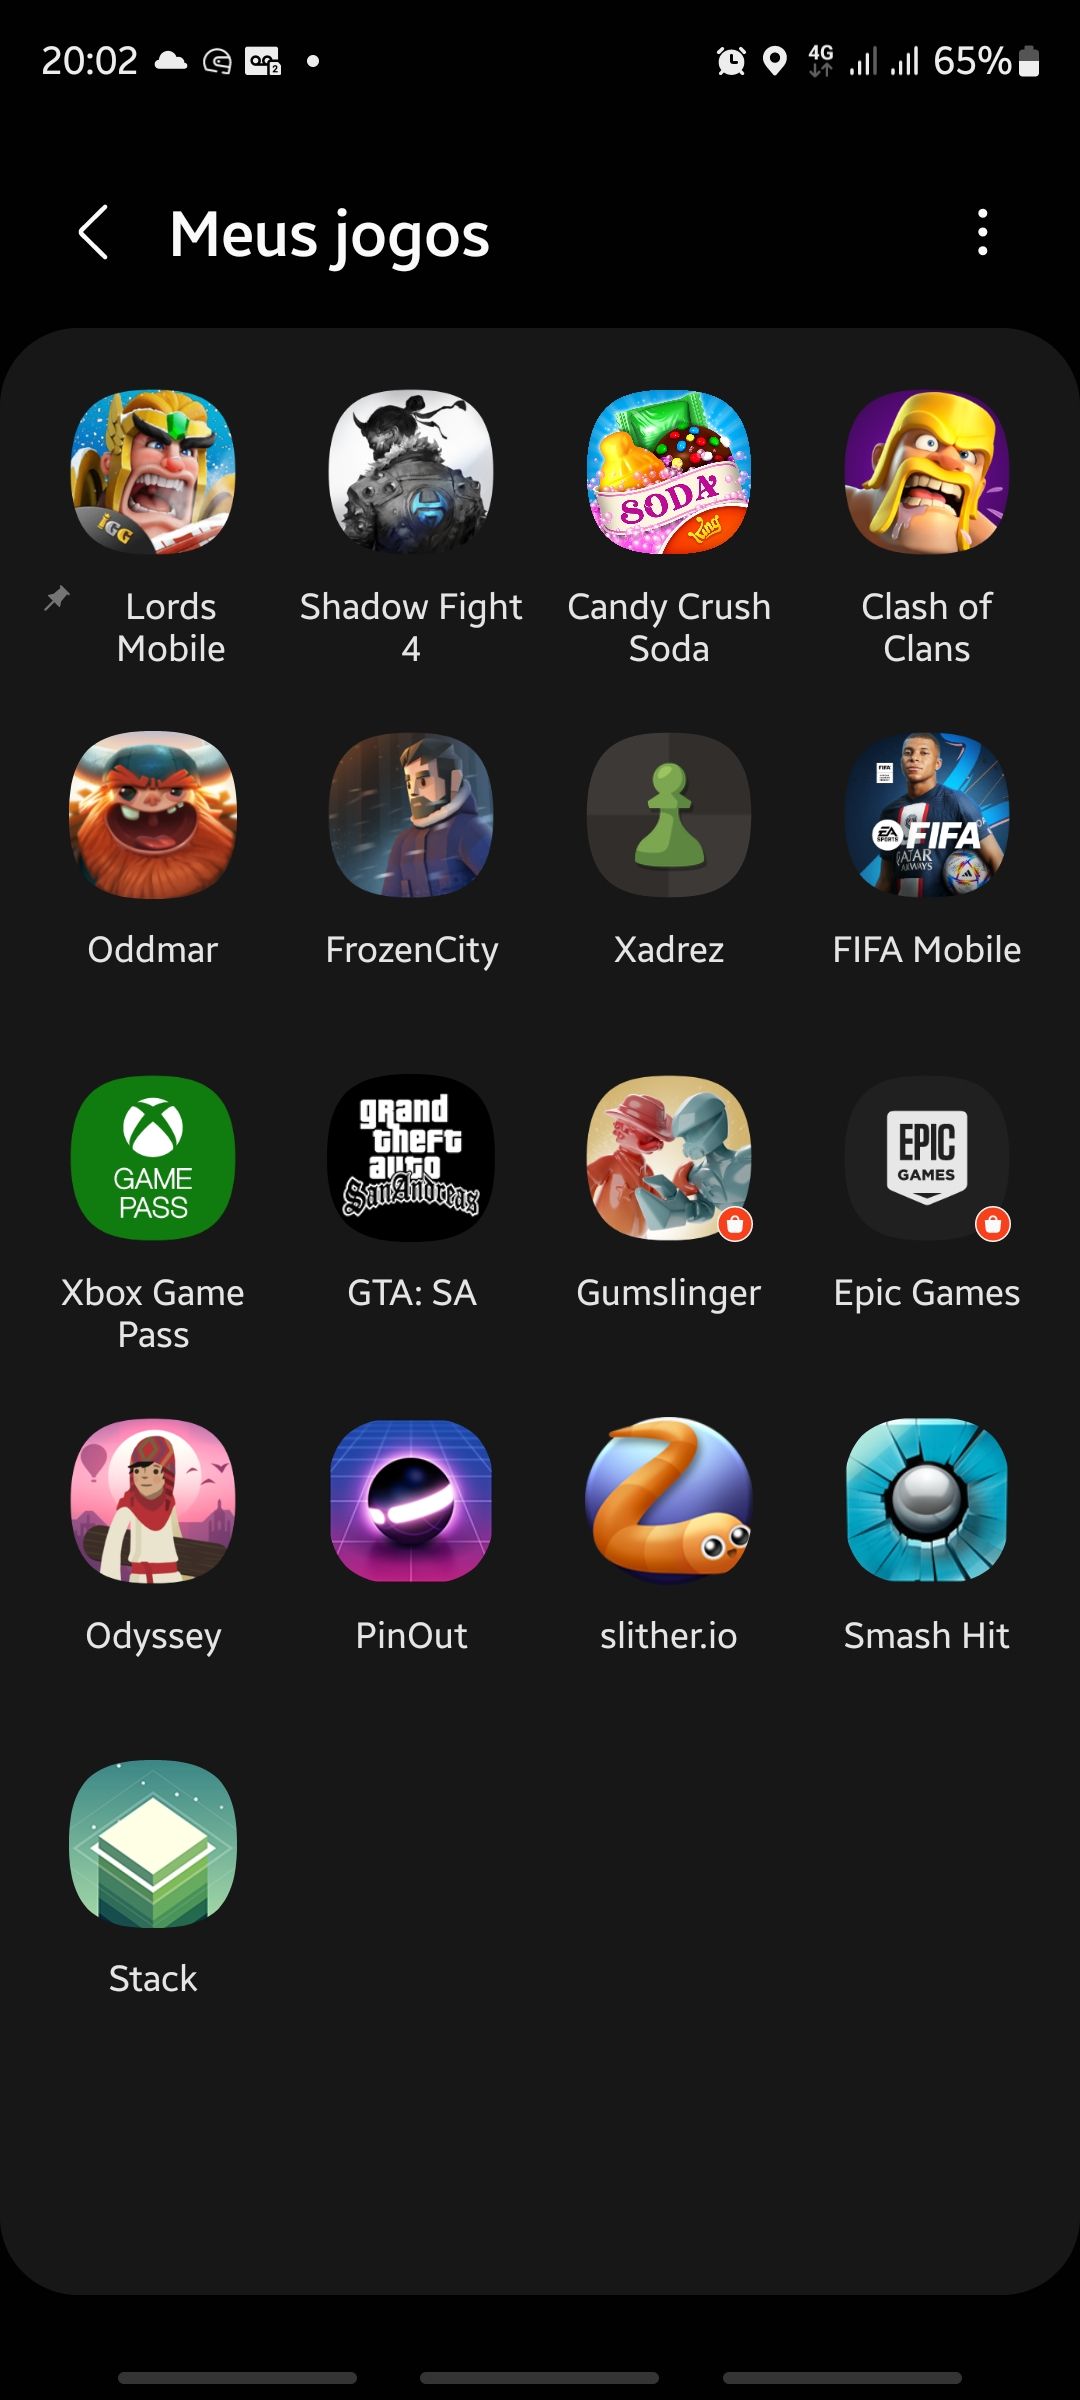 Quais jogos você tem no seu celular? - Samsung Members